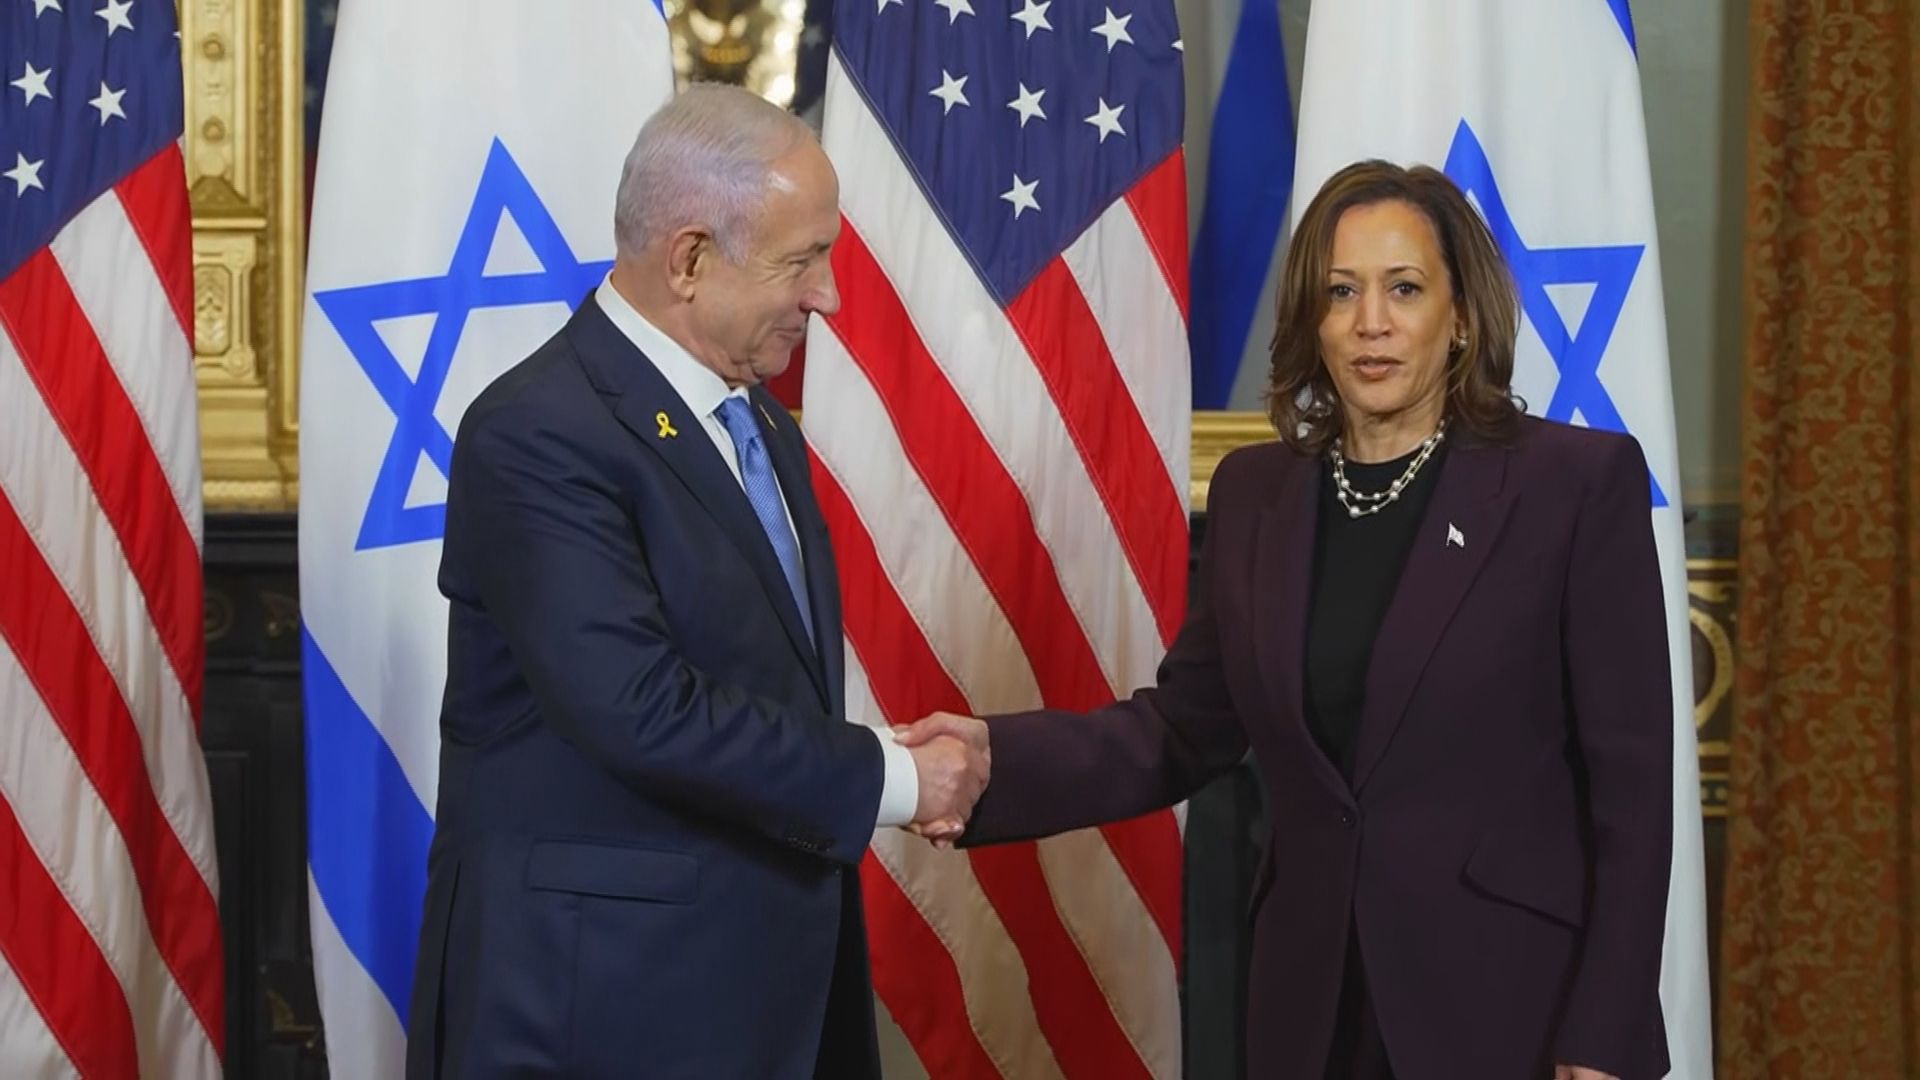 アメリカ・ハリス副大統領、イスラエル・ネタニヤフ首相と会談、パレスチナ自治区ガザの民間人犠牲に「深刻な懸念」伝達